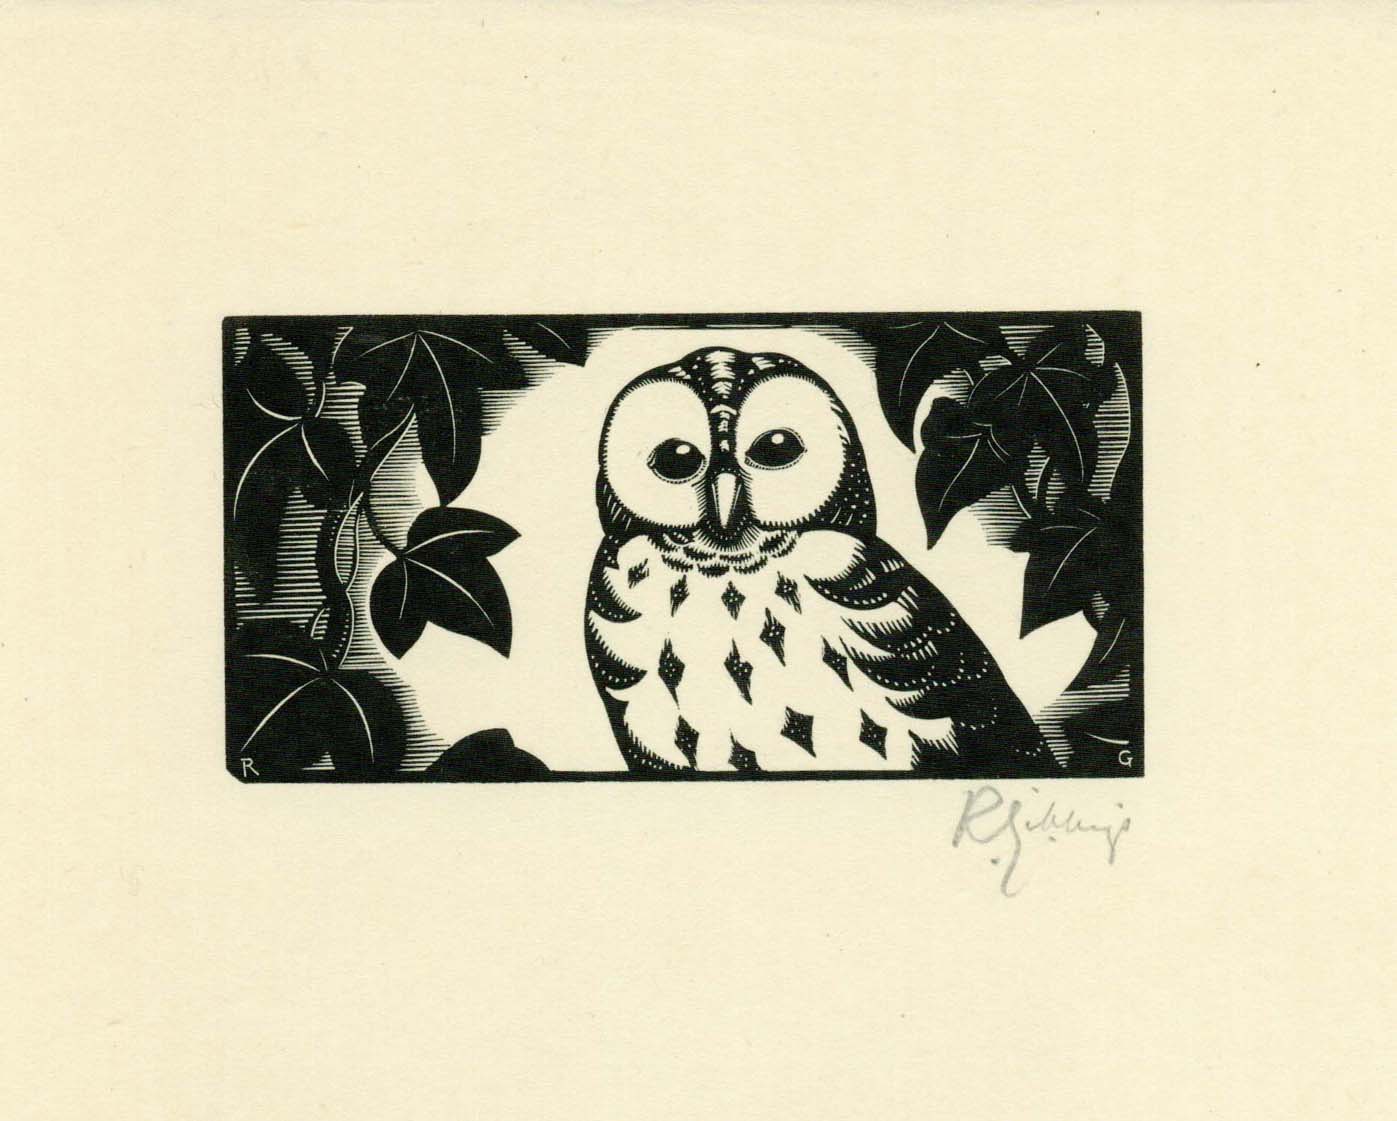 Owl print by Robert Gibbings